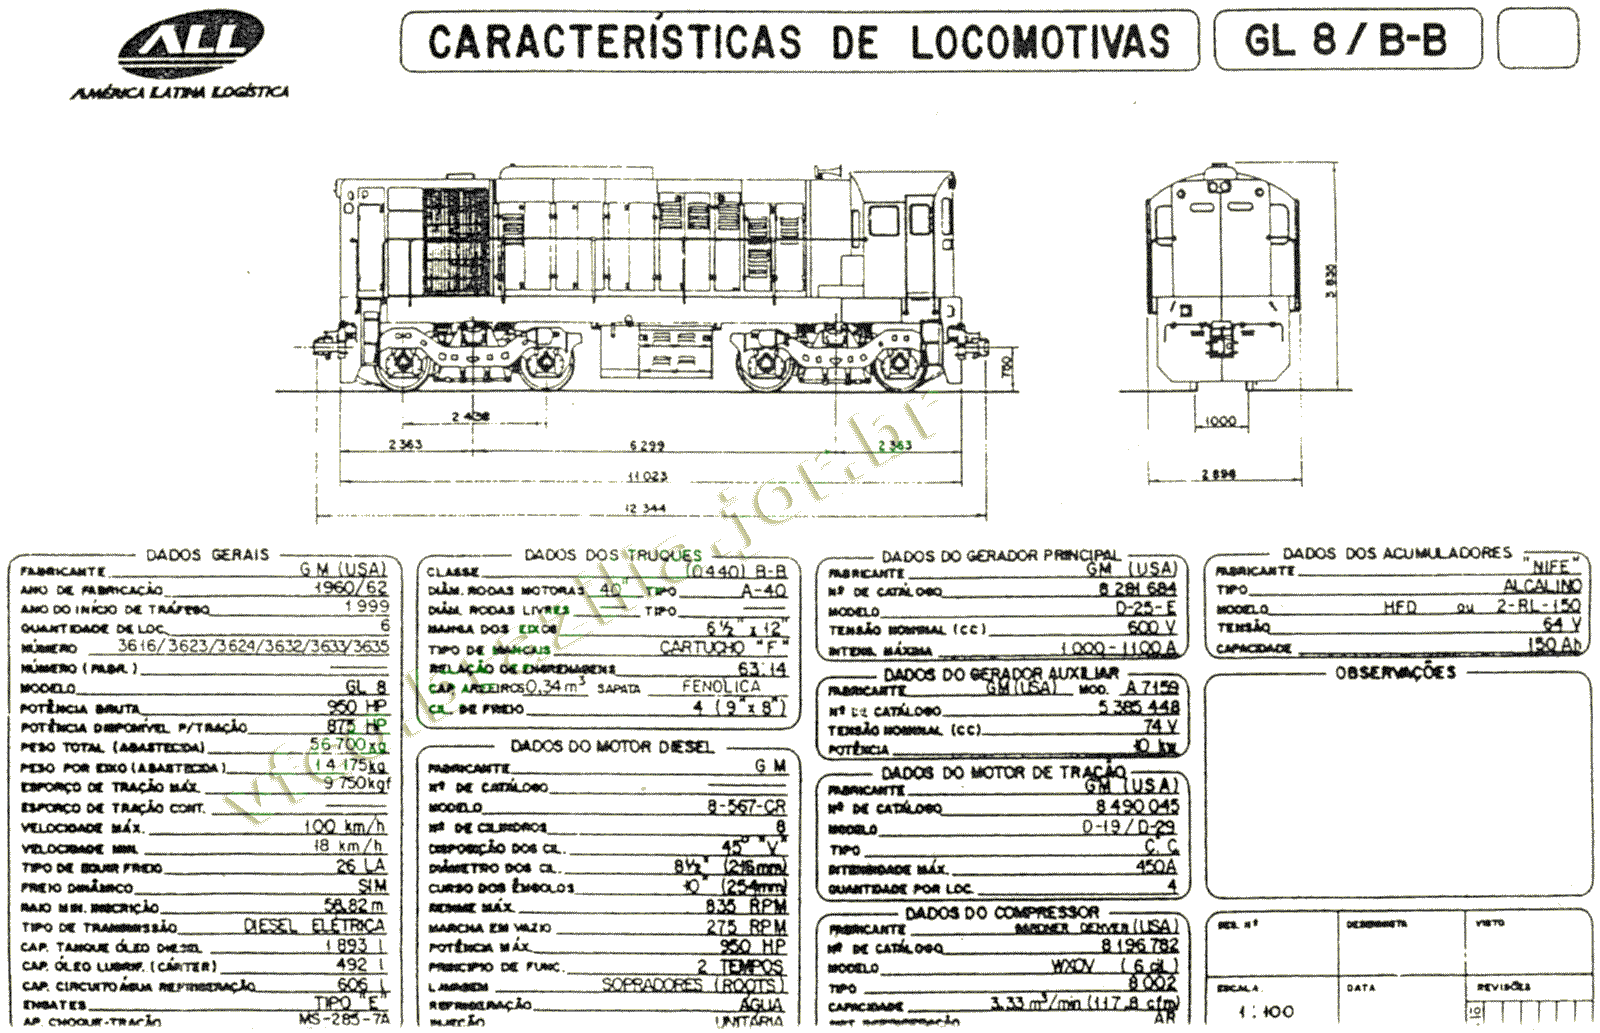 Desenho e medidas das Locomotivas GL8 nº 3616-3635 da ferrovia ALL